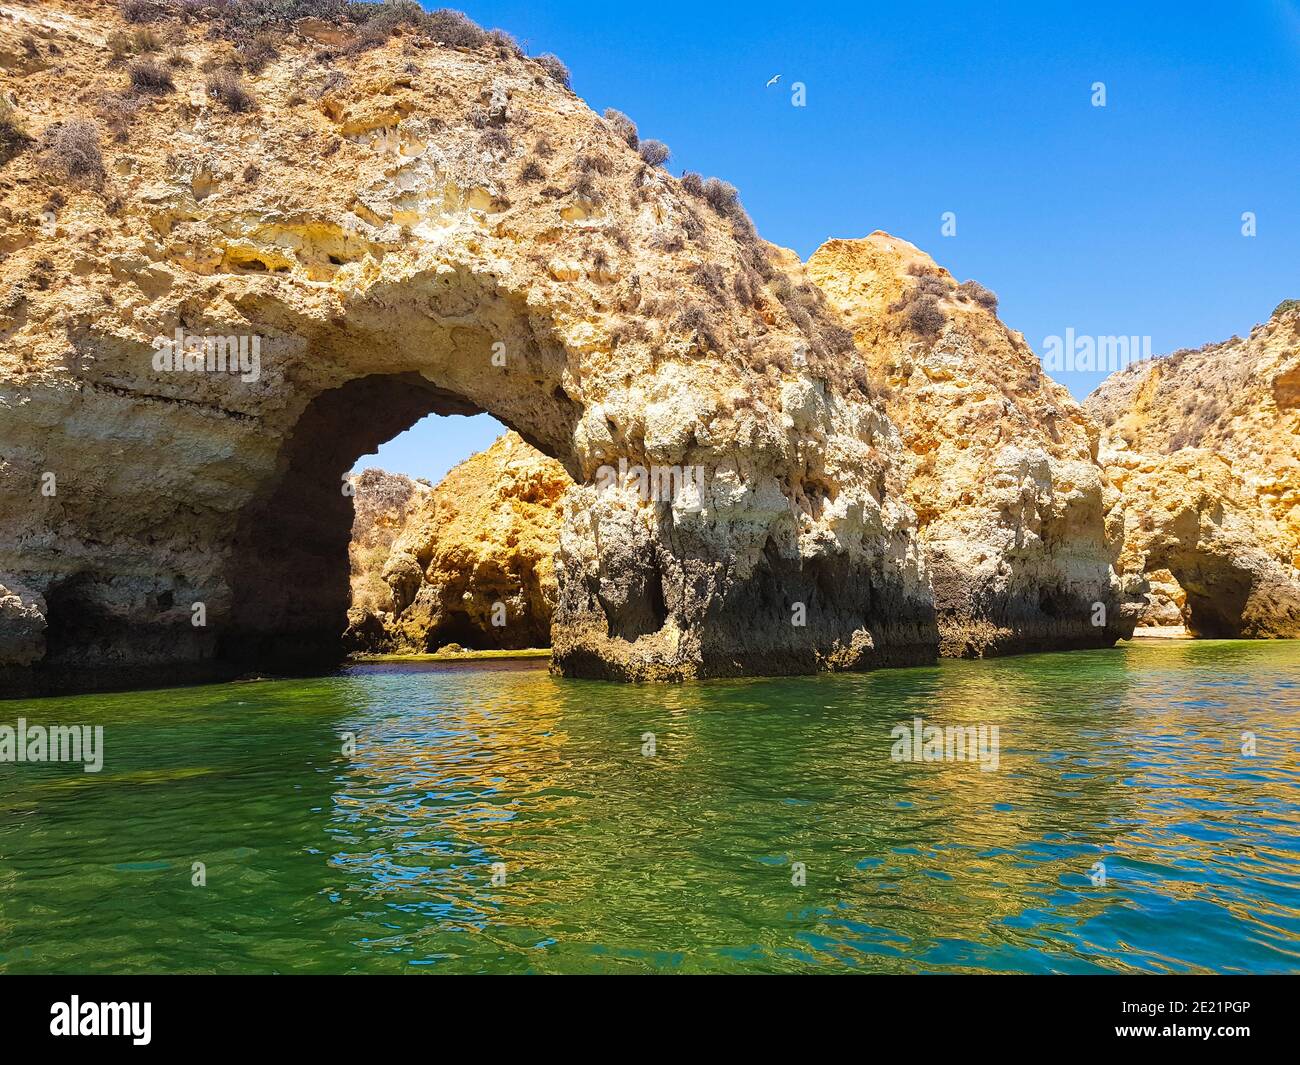 Arco formato in una grotta marina nella regione dell'Algarve in Portogallo. Foto Stock